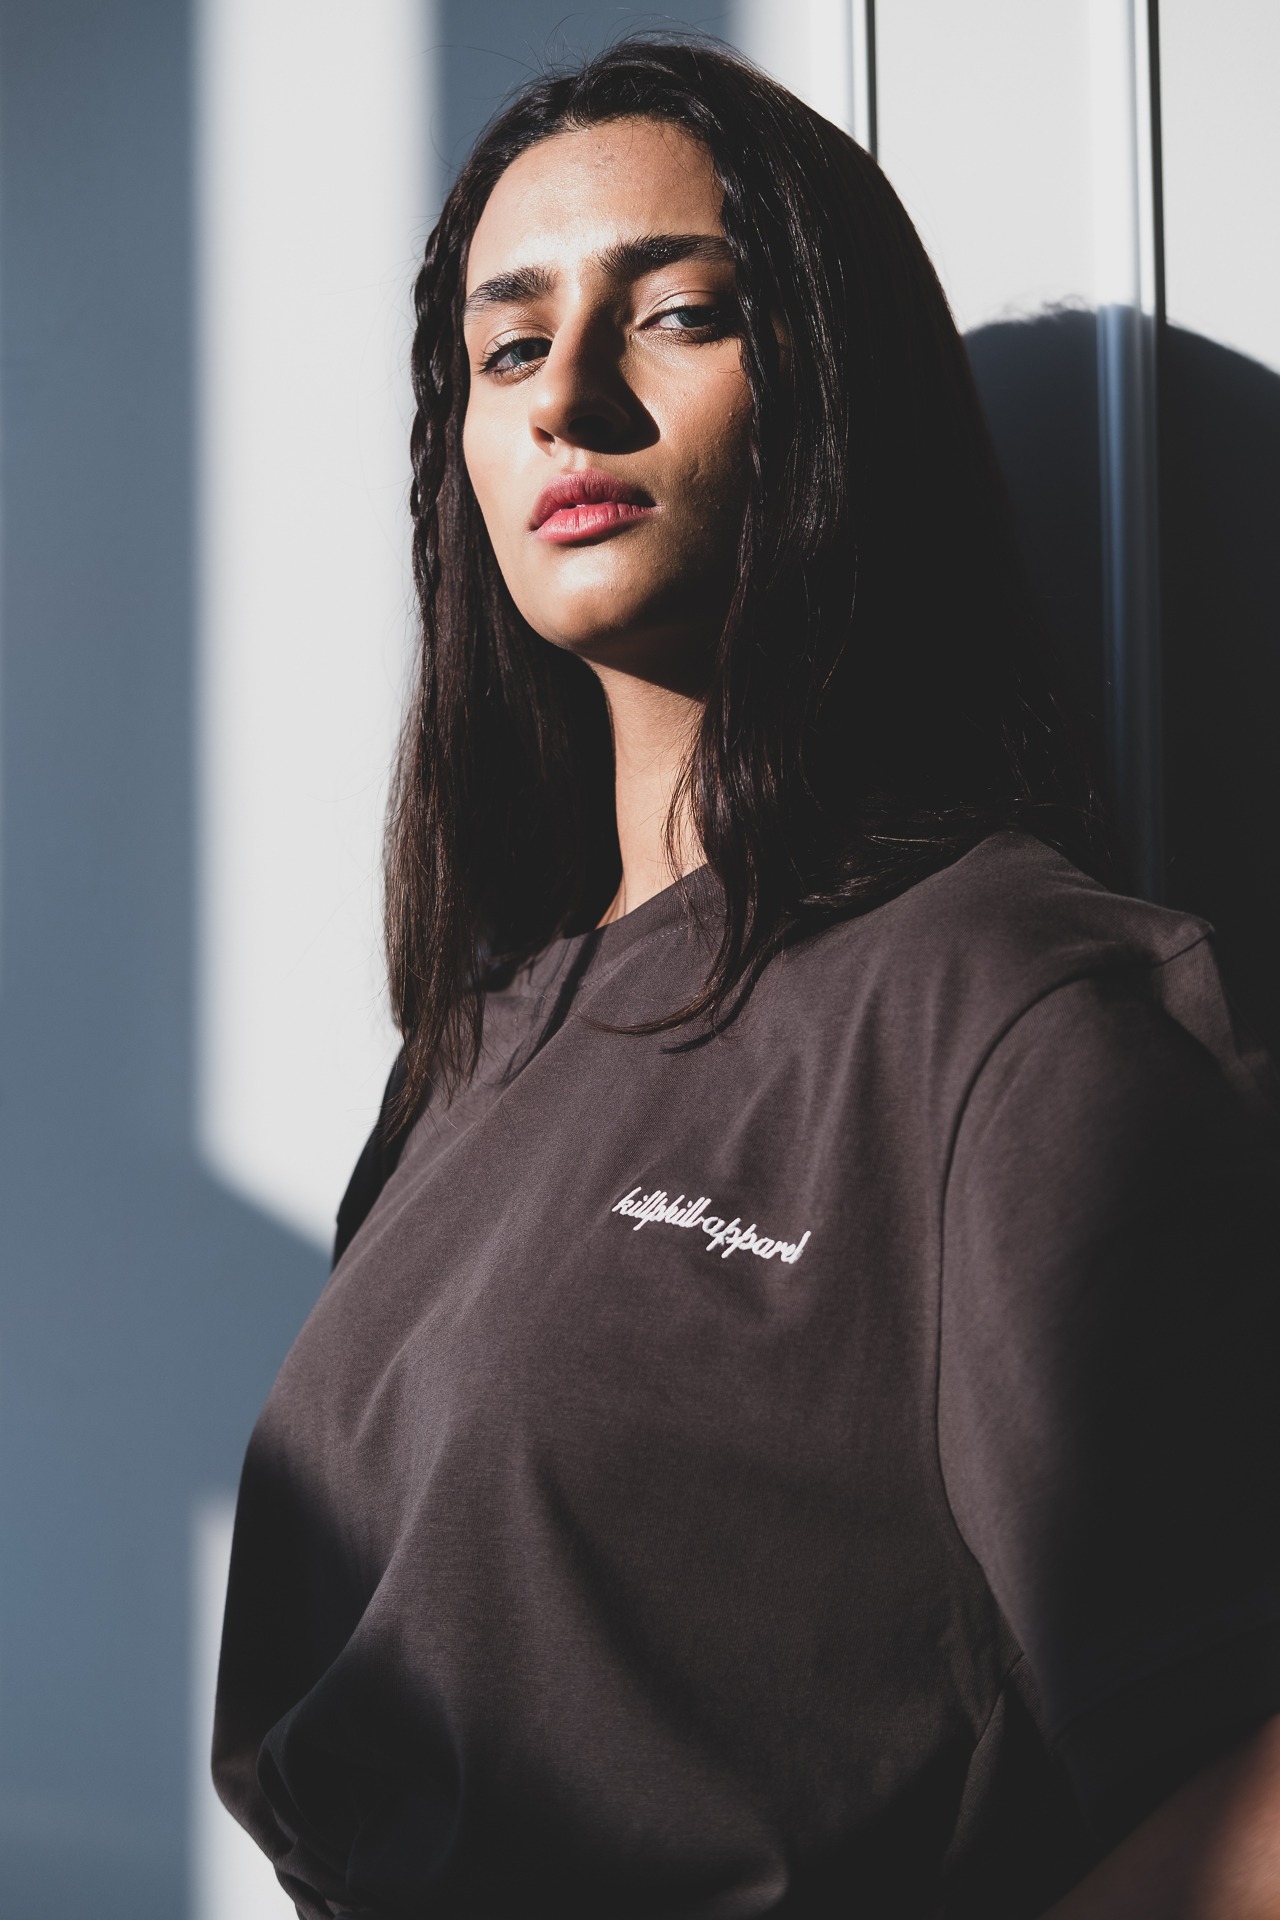 Farbige Fotografie von dem Model "Tara Zoe Woeltjes" vom Fashionshooting der Fashion Brand "killphill apparel"